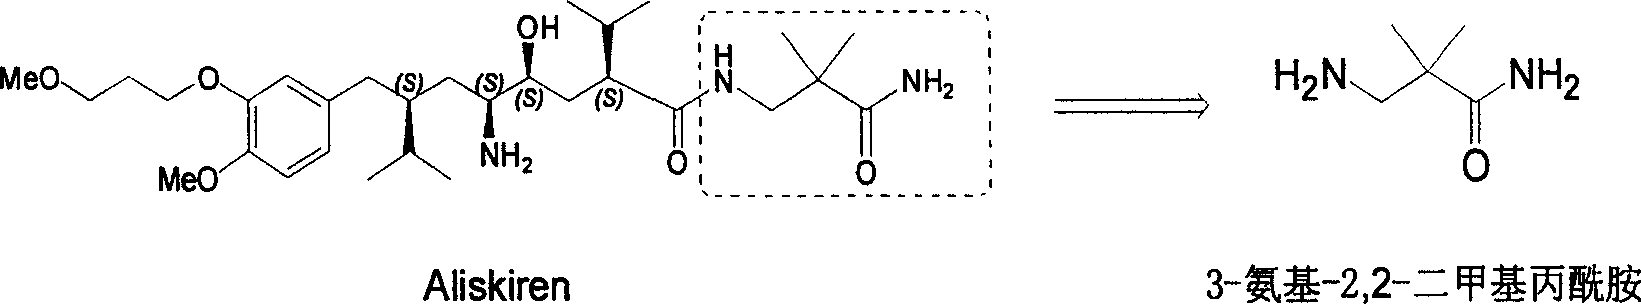 Industrial preparation method for 3-amino-2, 2-dimethyl propionamide